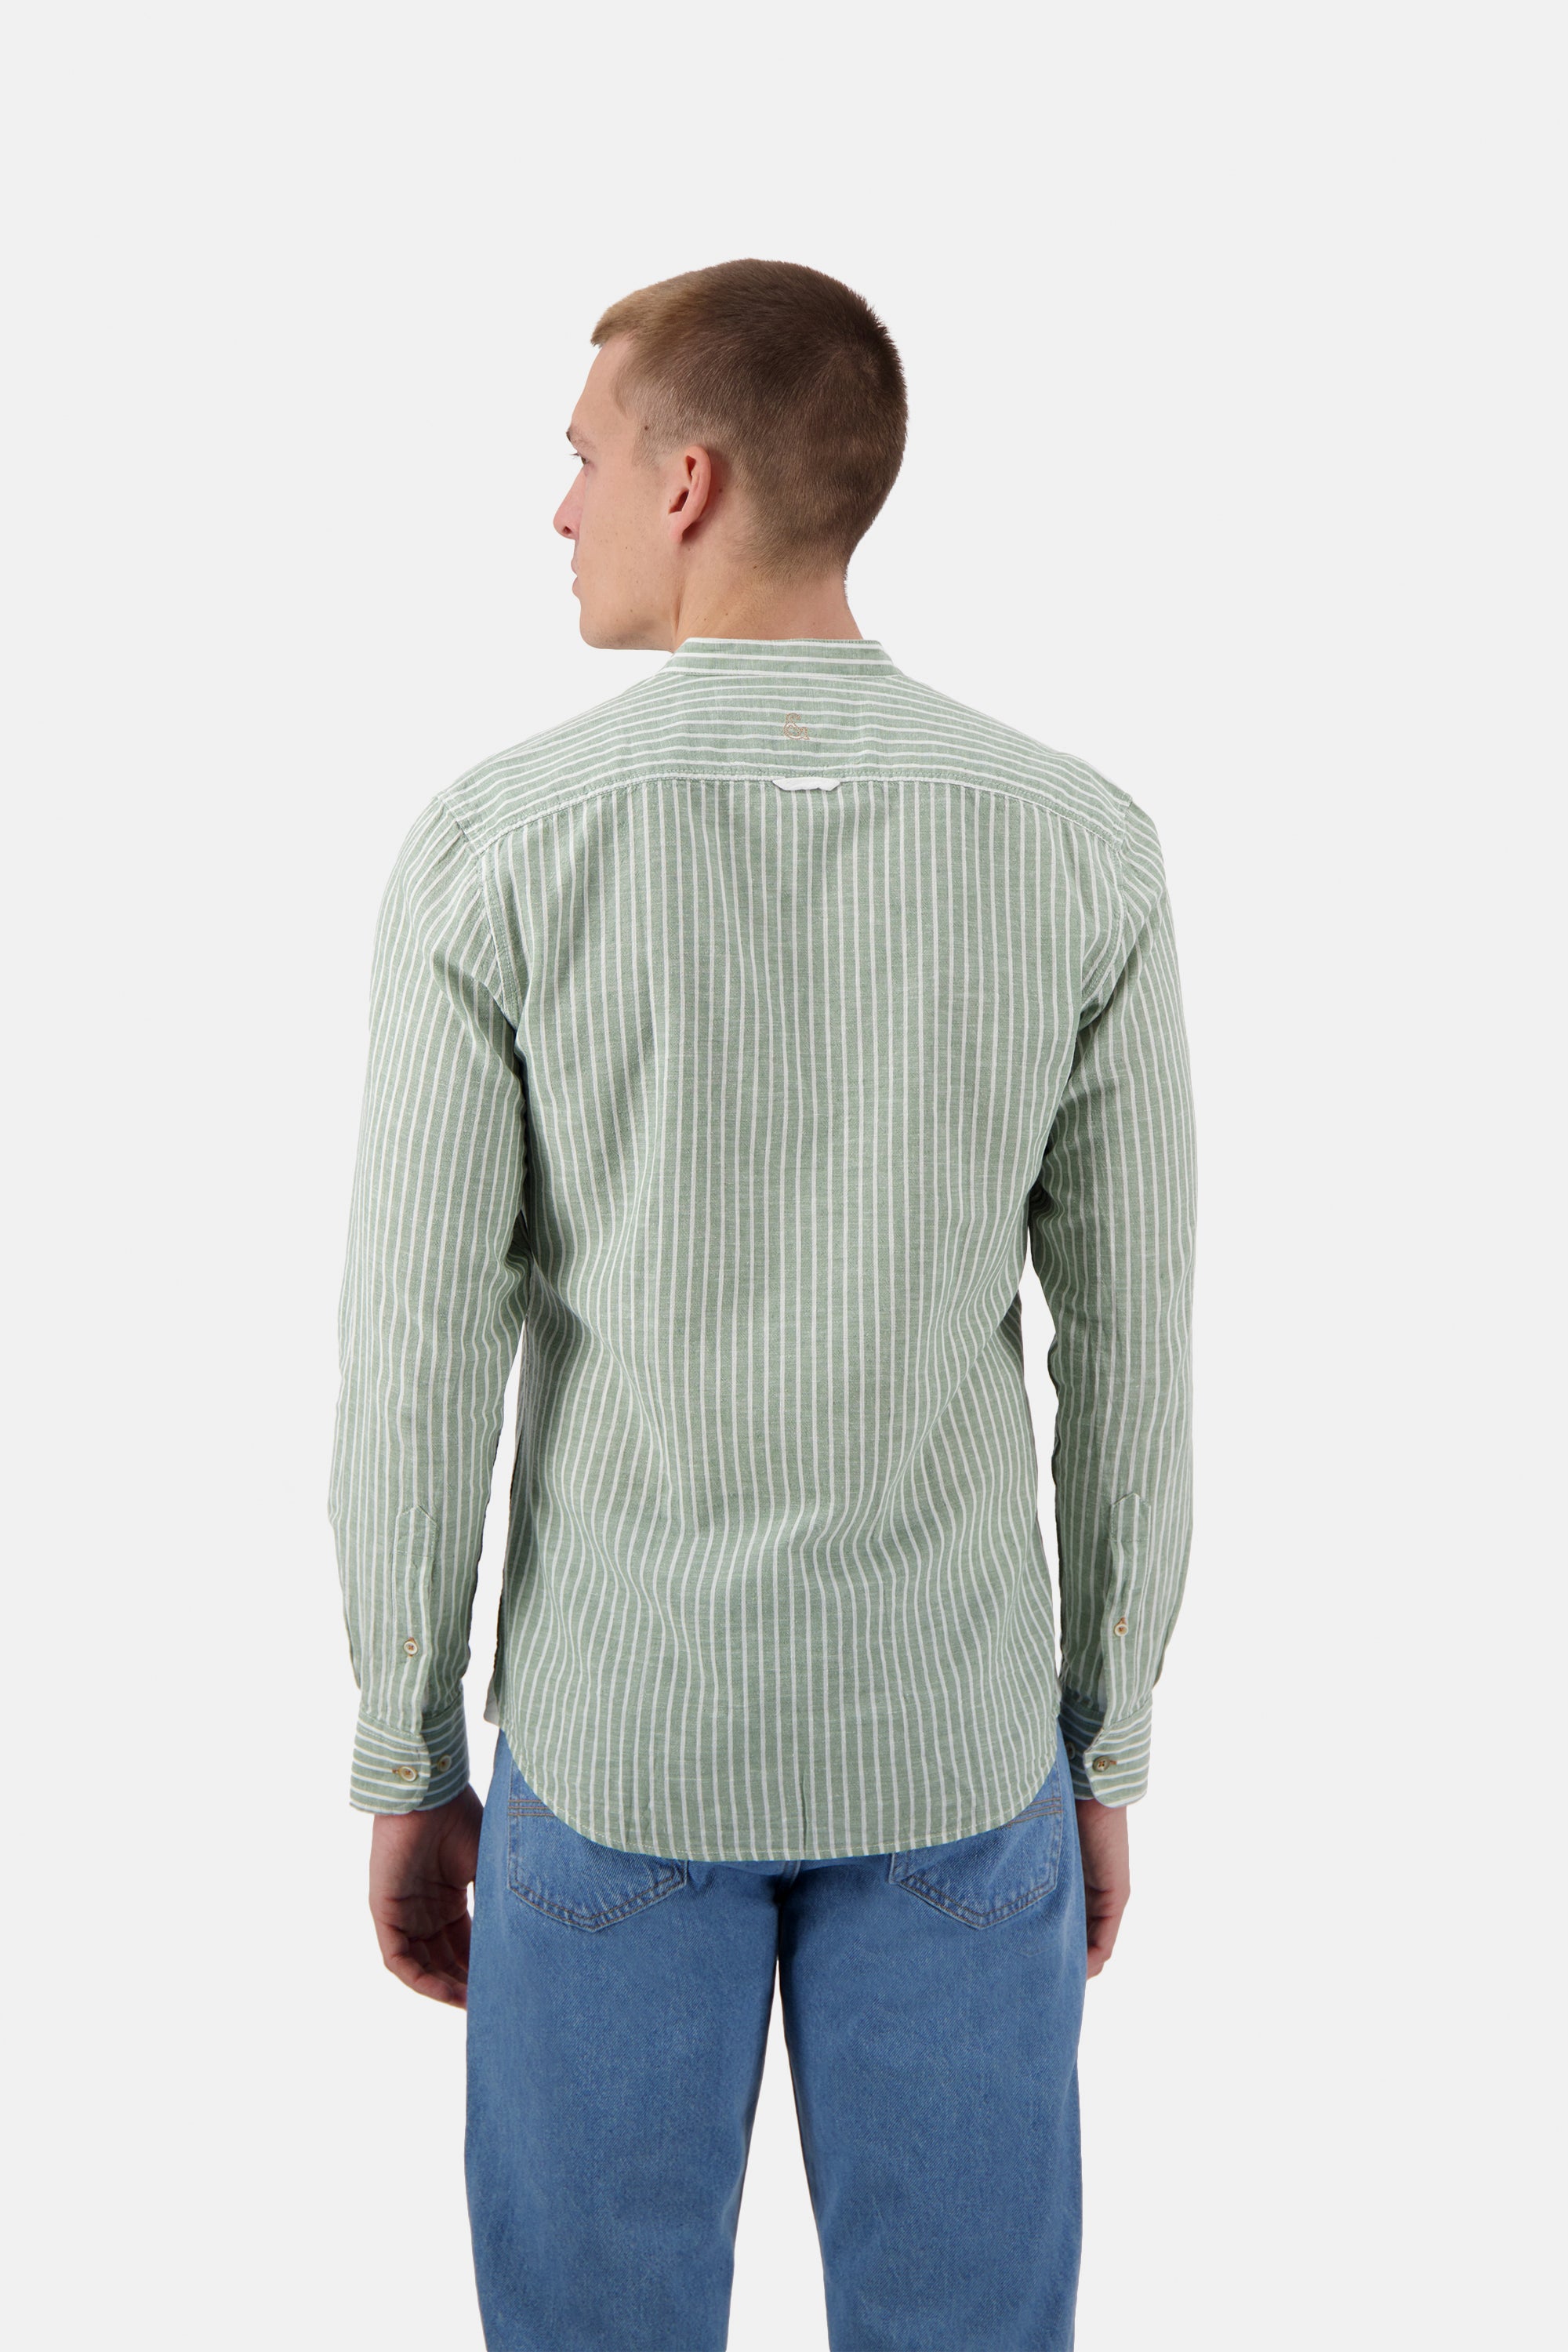 Herren Hemd, hellgrün, aus 70% Baumwolle 30% Leinen von Colours & Sons